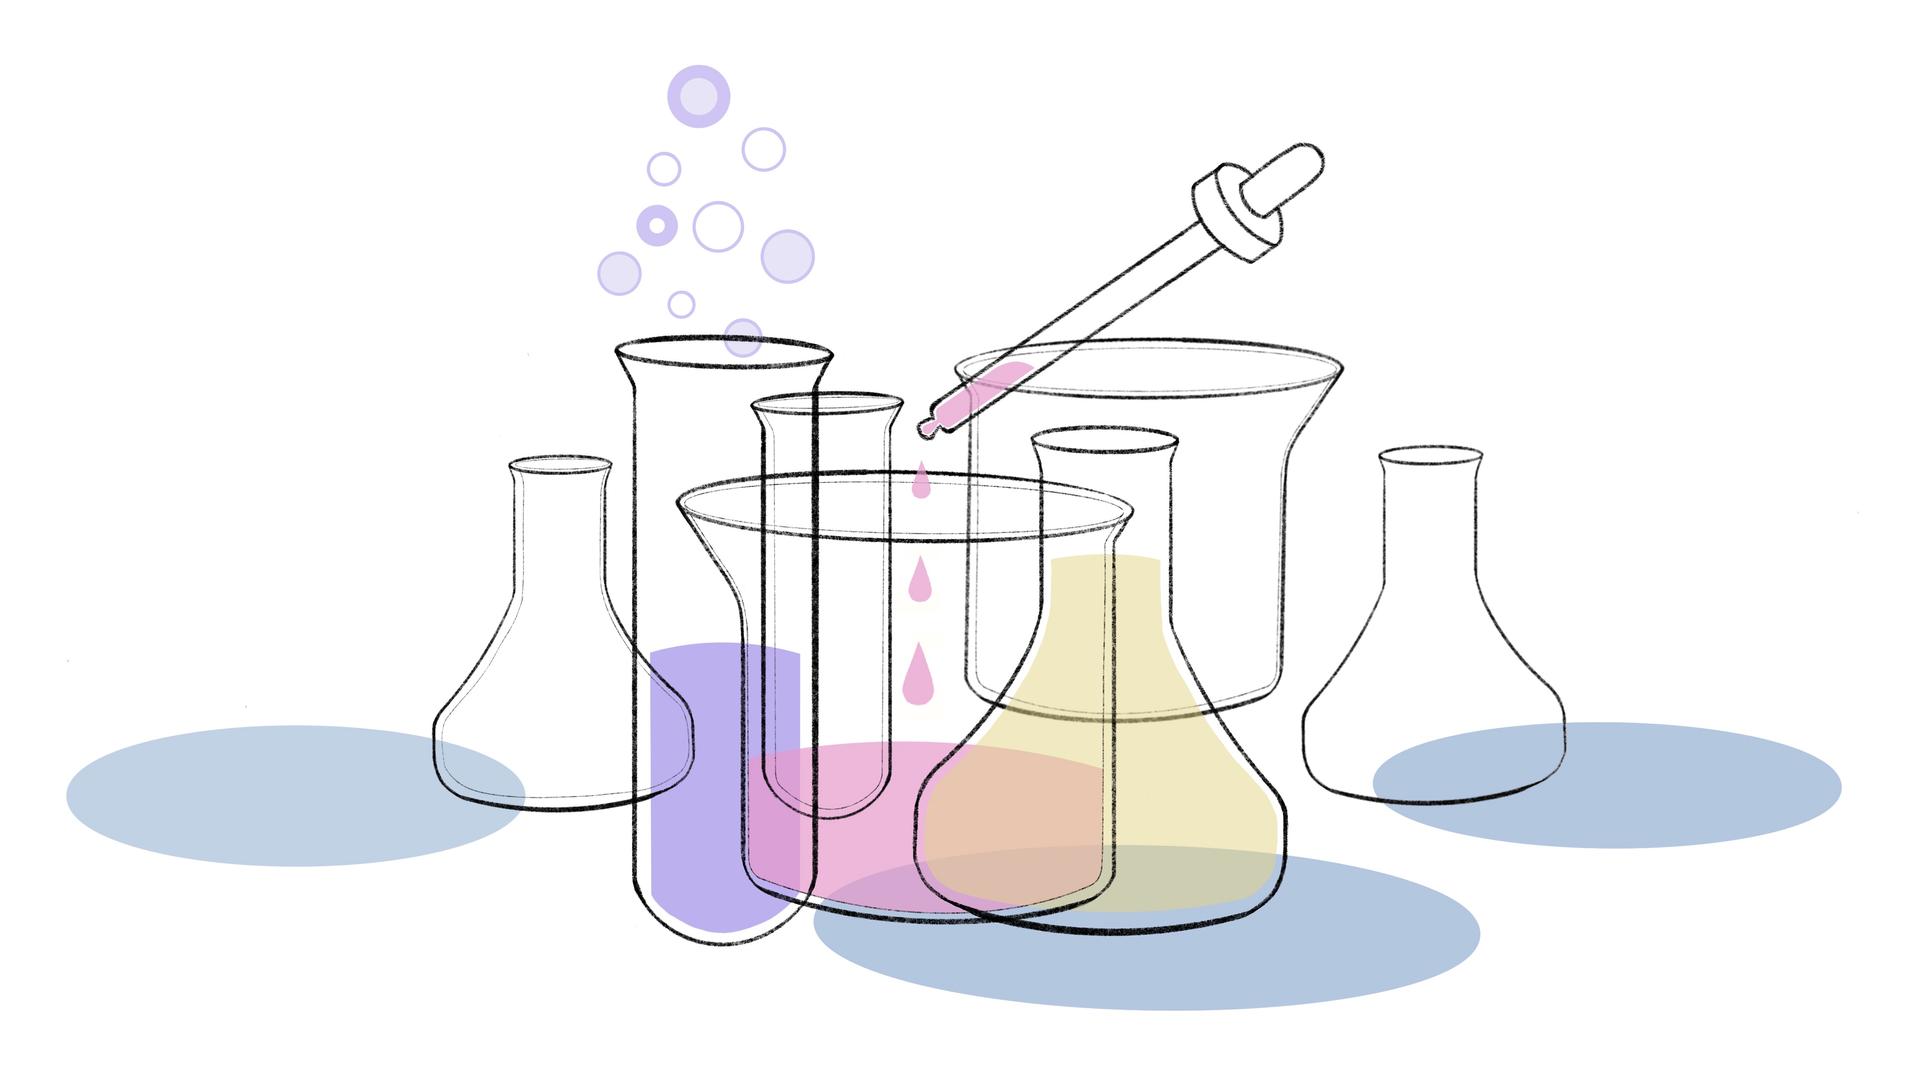 Die Illustration zeigt typische Untersuchungsbehältnisse, die von Labormediziner zur Analyse genutzt werden.